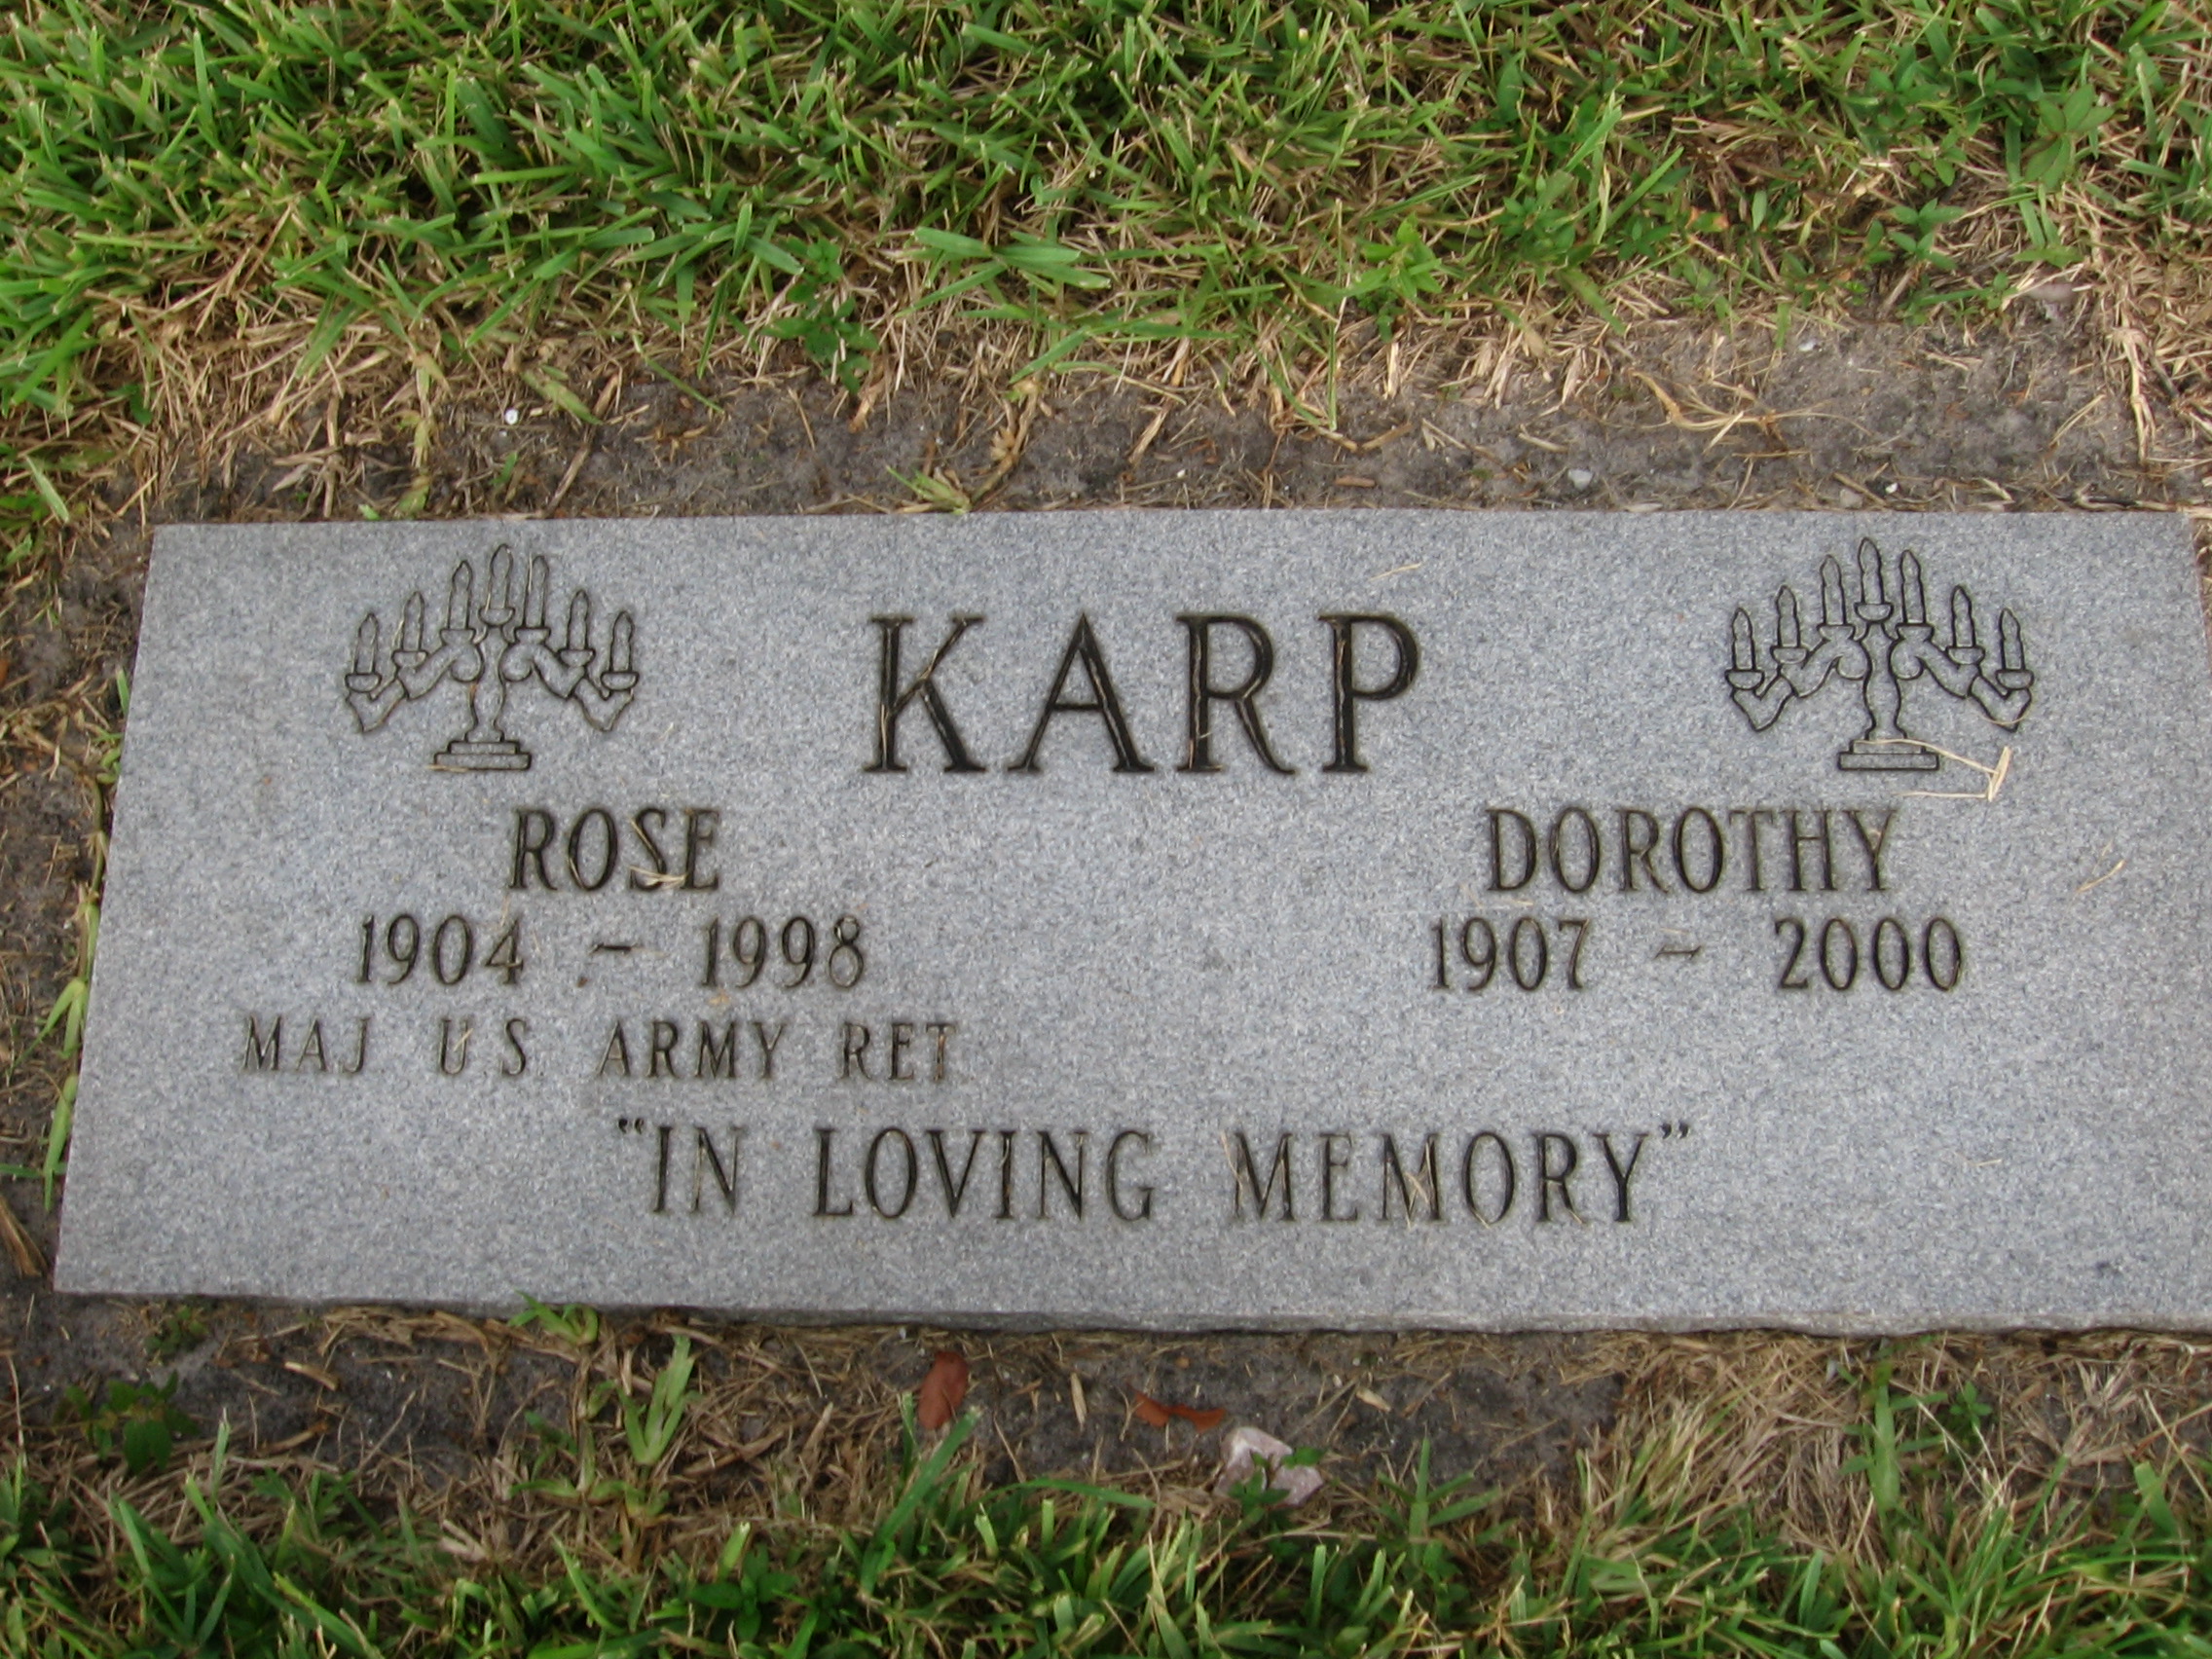 Rose Karp